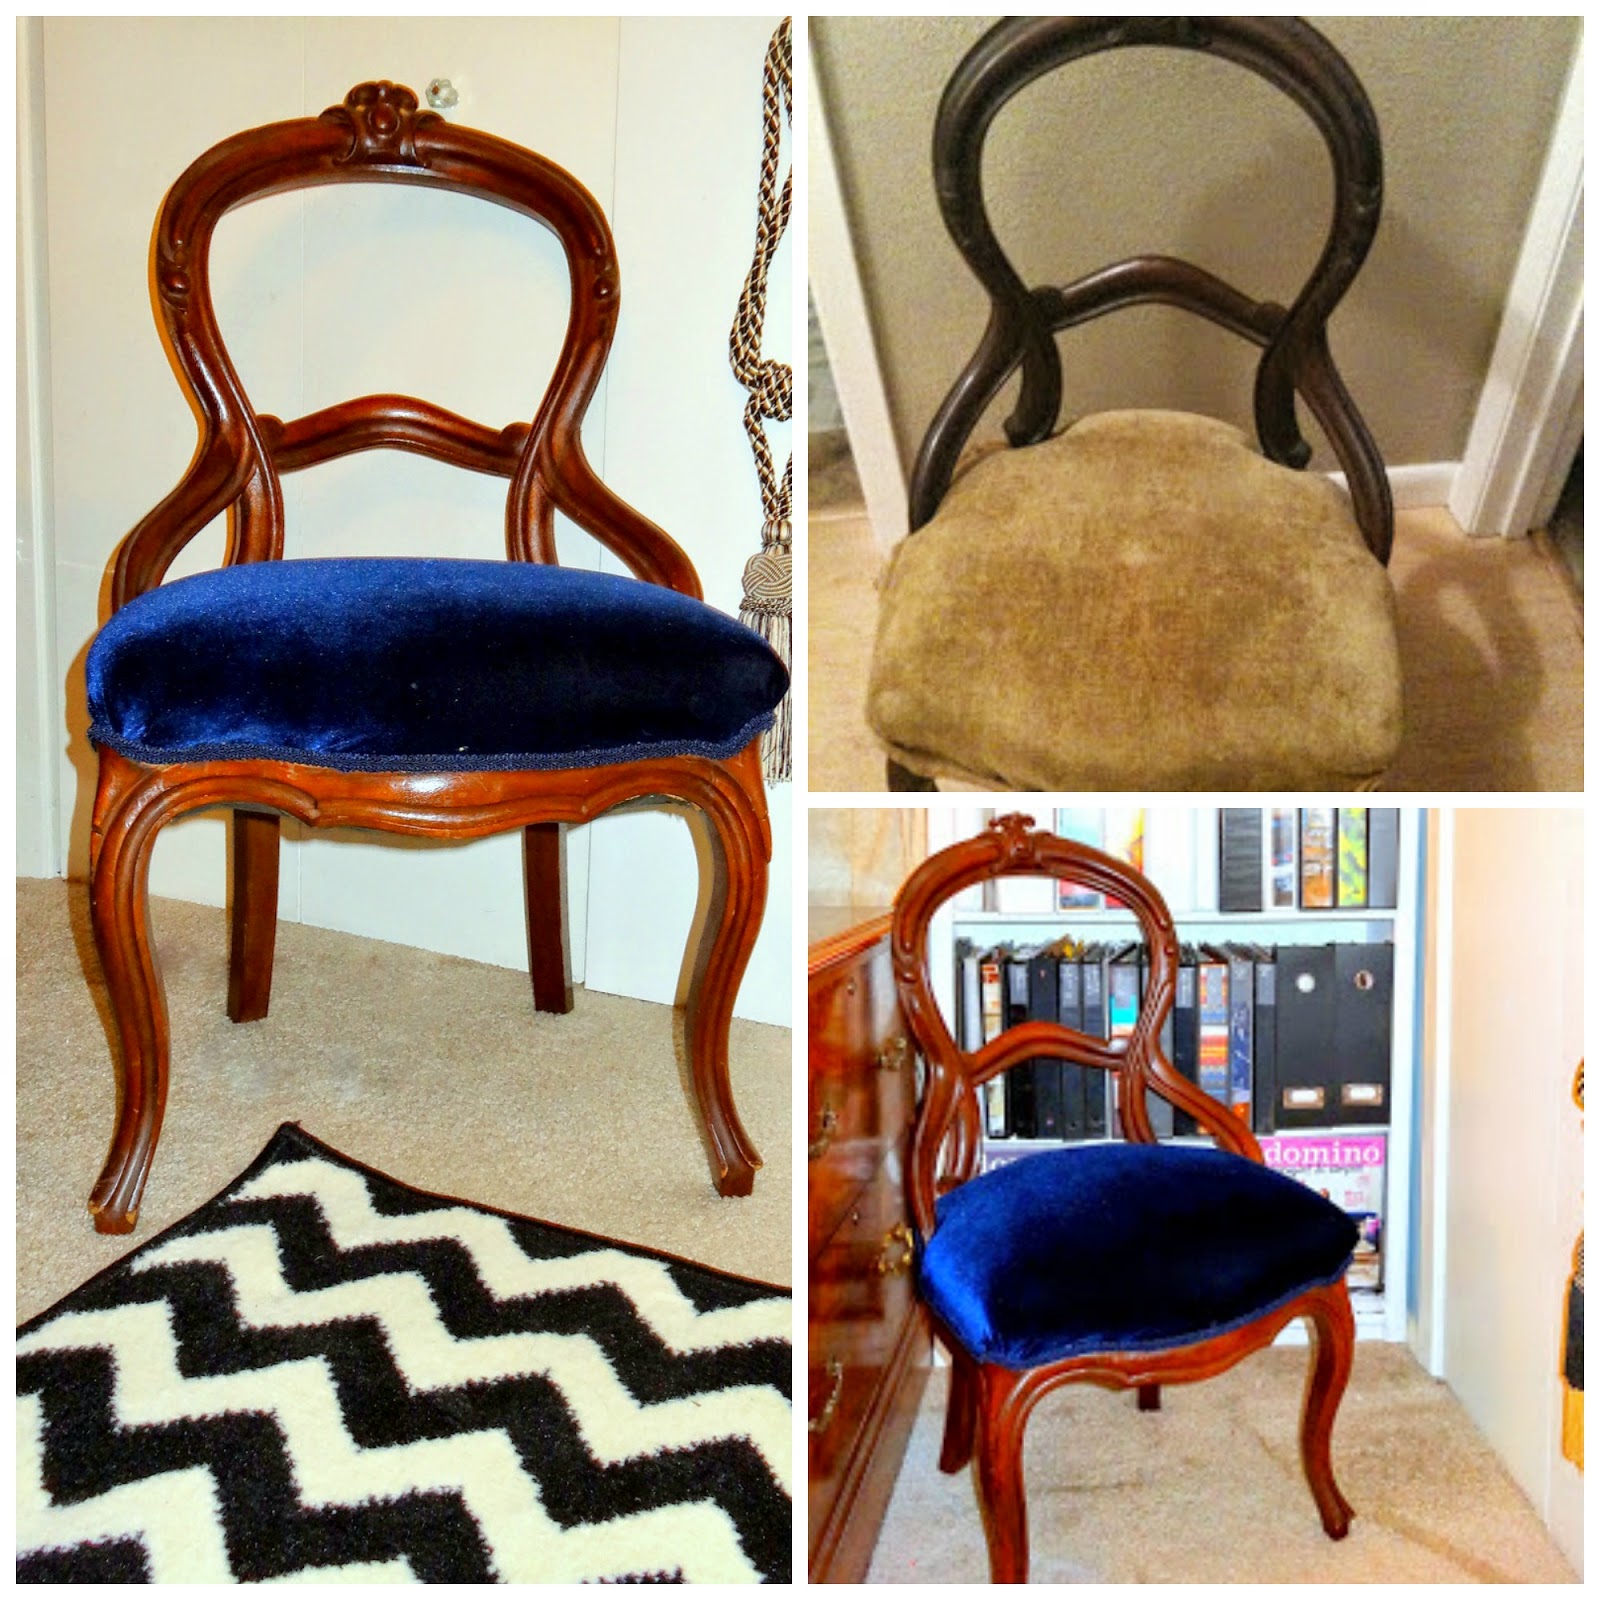 http://sparkleandvine.blogspot.com/2013/11/antique-chair-reveal.html